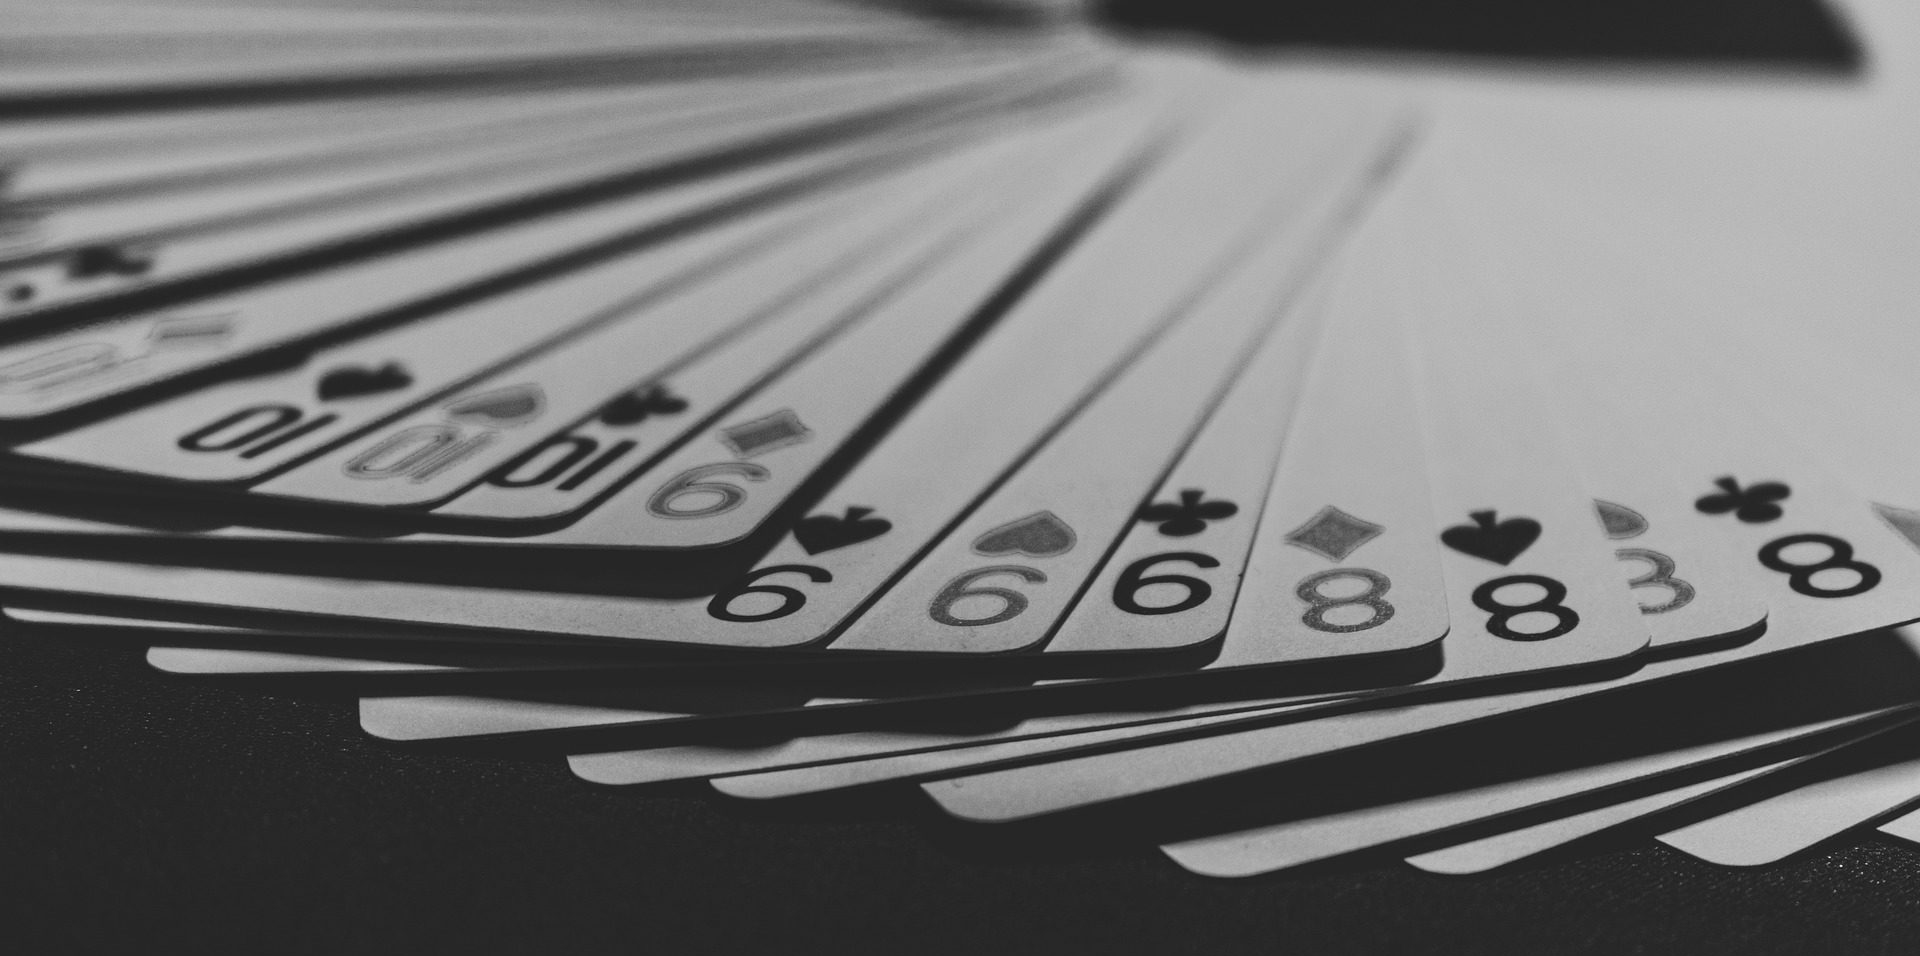 Gra w gry losowe, czyli hazard, może być uzależnieniem